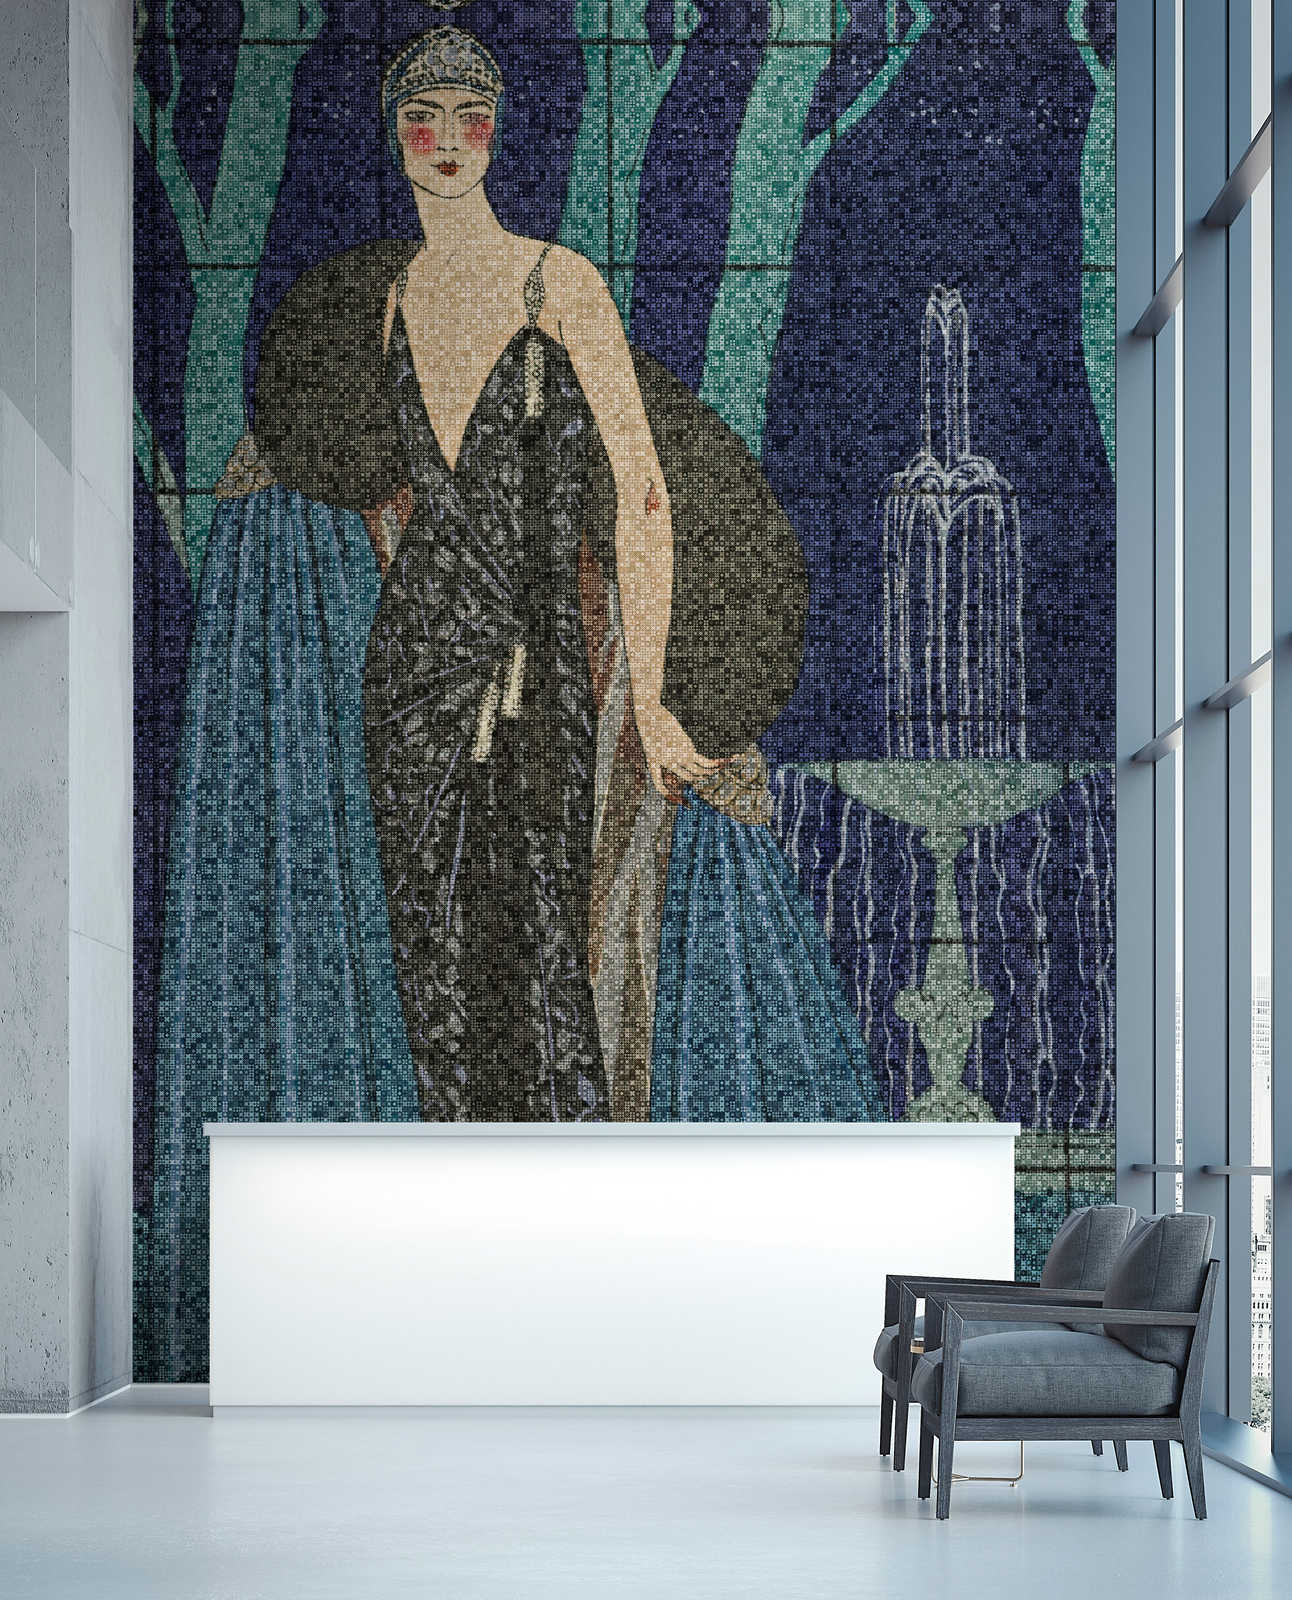             Scala 3 - Art Deco Behang elegante vrouwen motief
        